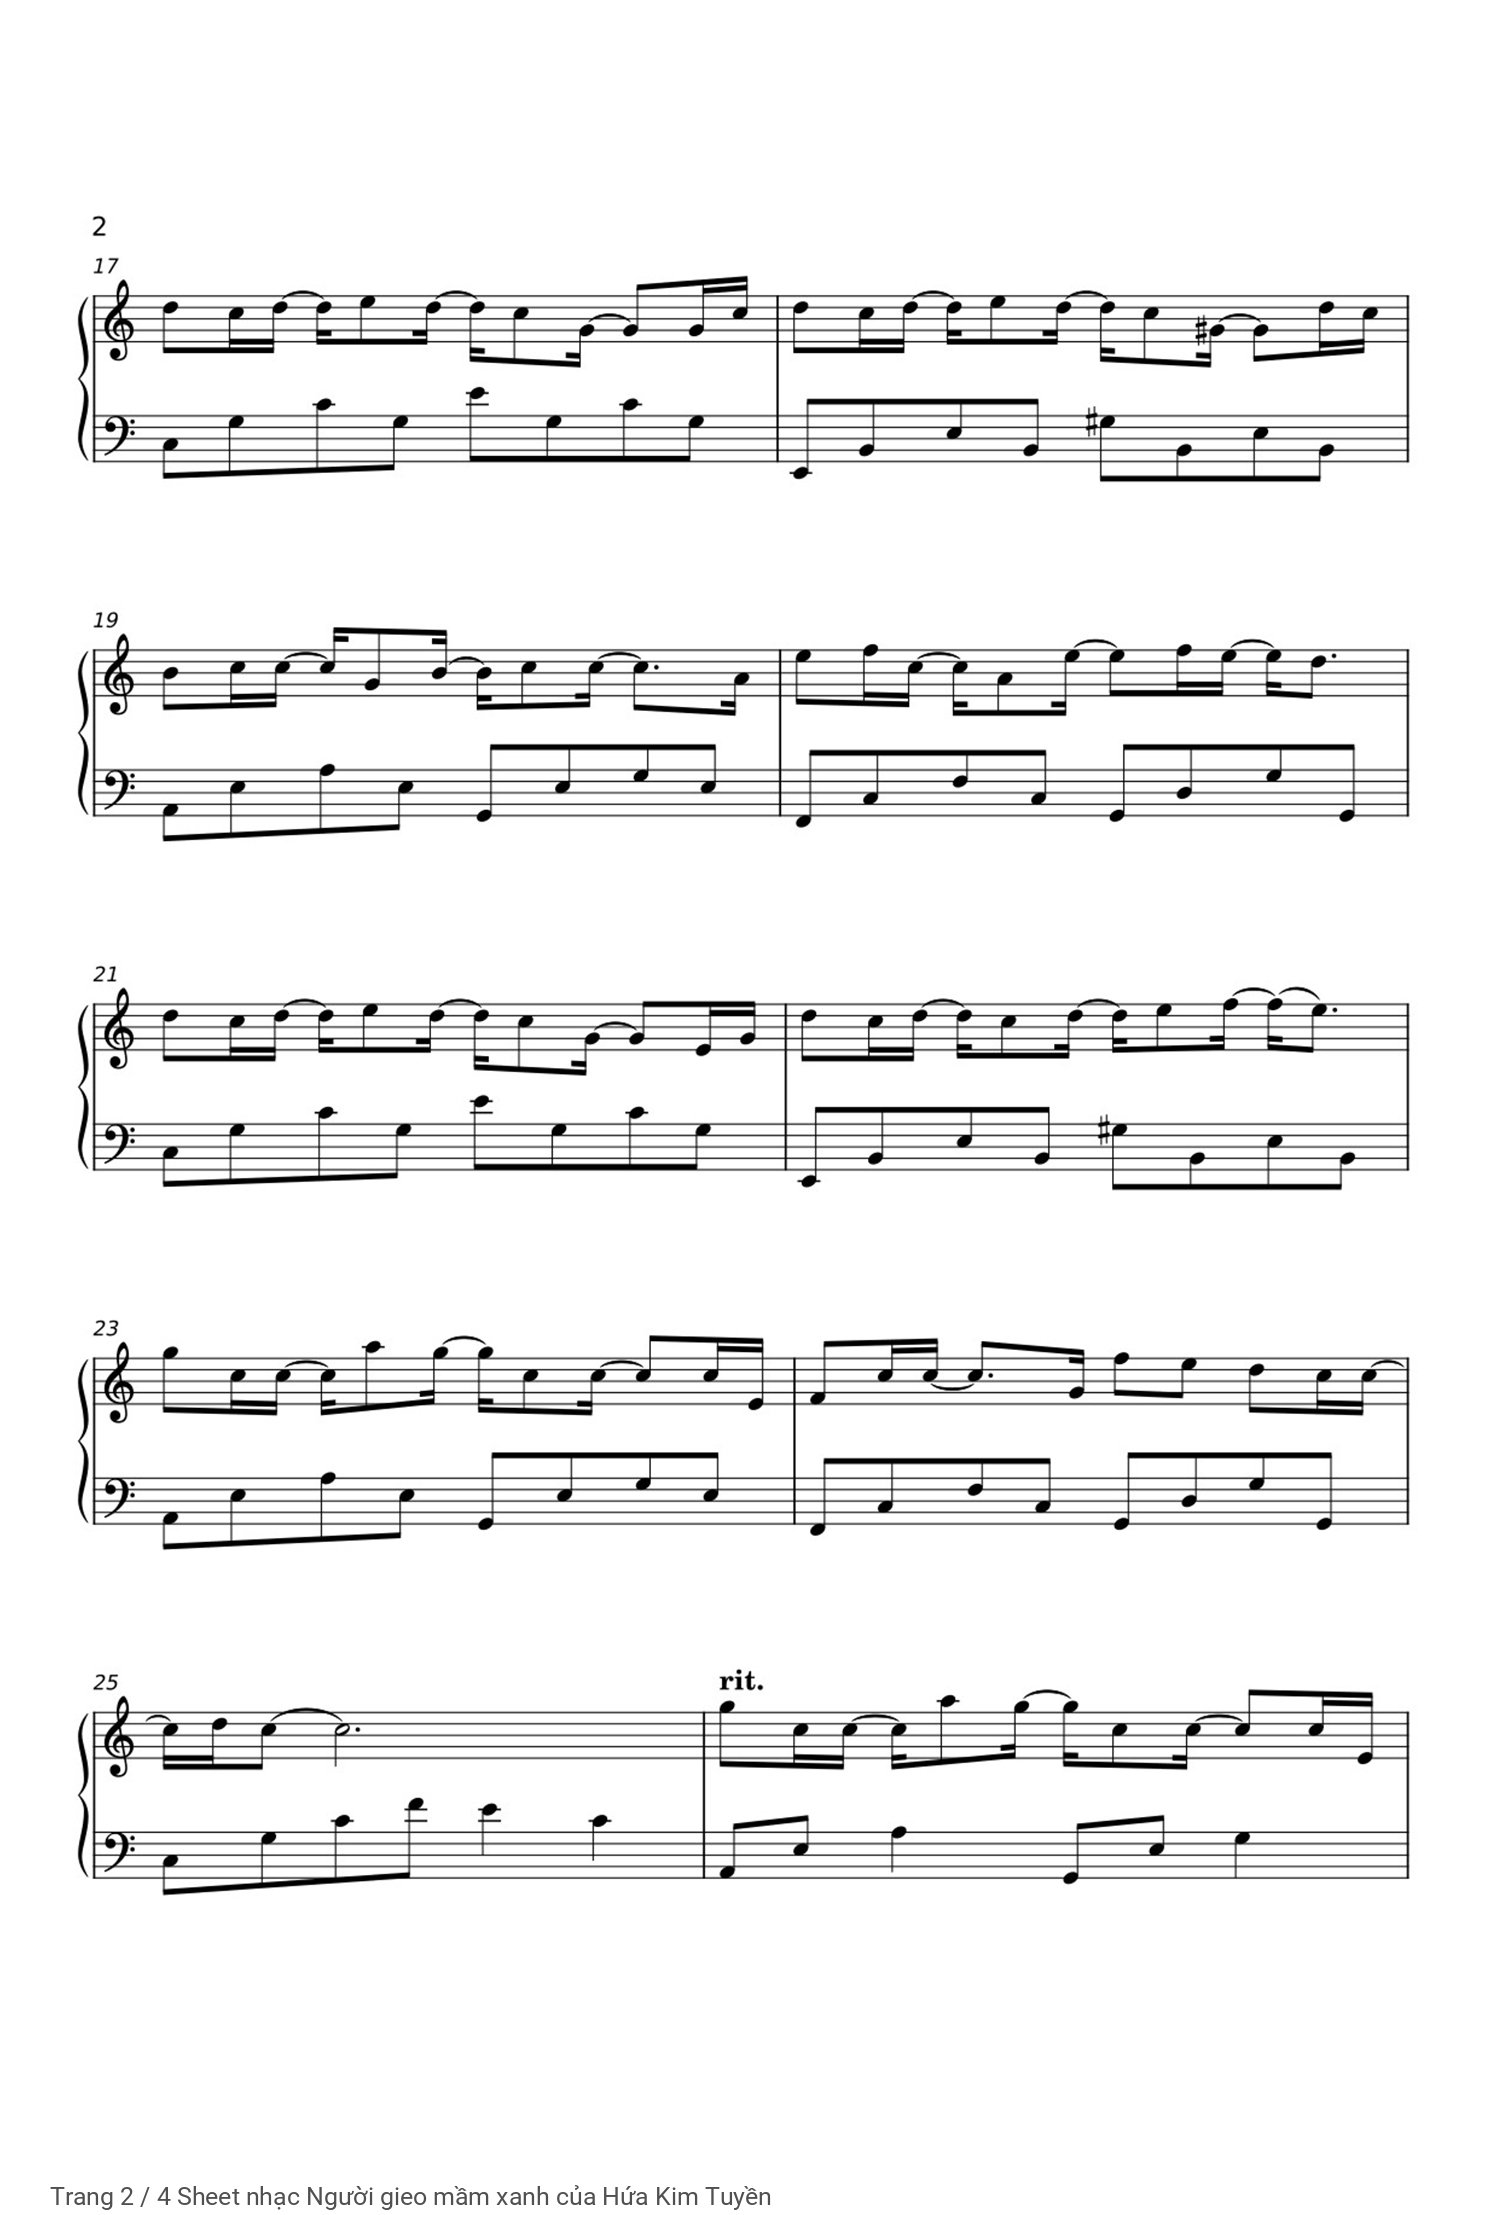 Trang 2 của Sheet nhạc PDF Piano bài hát Người gieo mầm xanh - Hứa Kim Tuyền